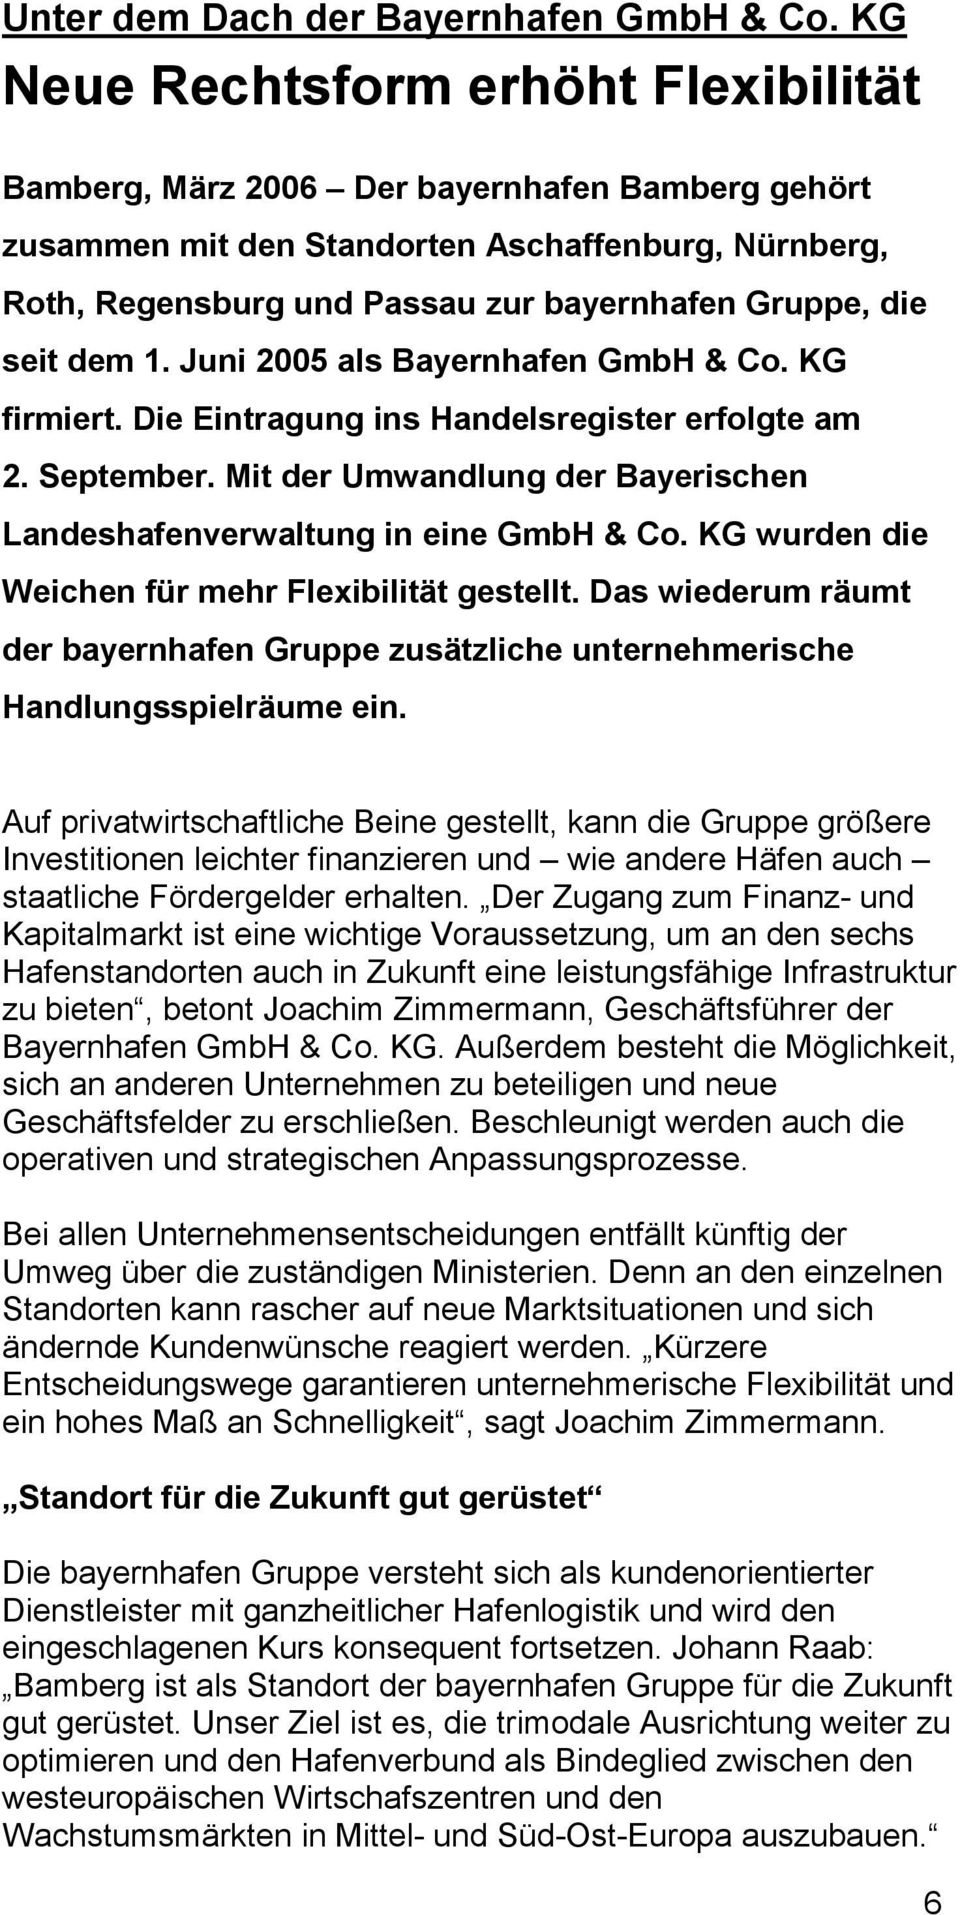 seit dem 1. Juni 2005 als Bayernhafen GmbH & Co. KG firmiert. Die Eintragung ins Handelsregister erfolgte am 2. September. Mit der Umwandlung der Bayerischen Landeshafenverwaltung in eine GmbH & Co.